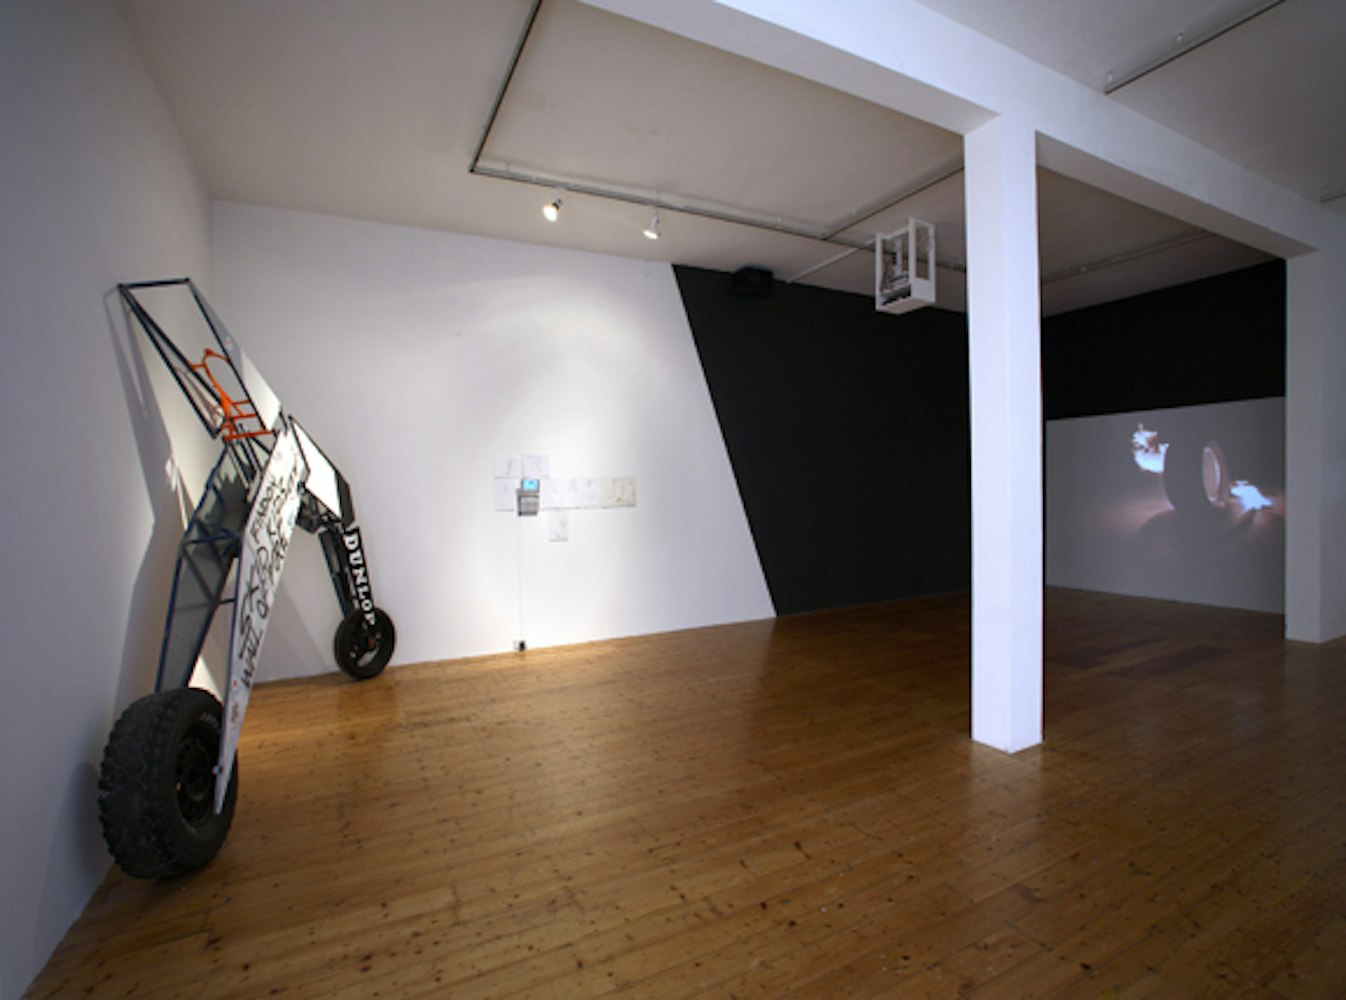 Installation view of Matthew Bradley, 'Storm Machine' at 200 Gertrude Street